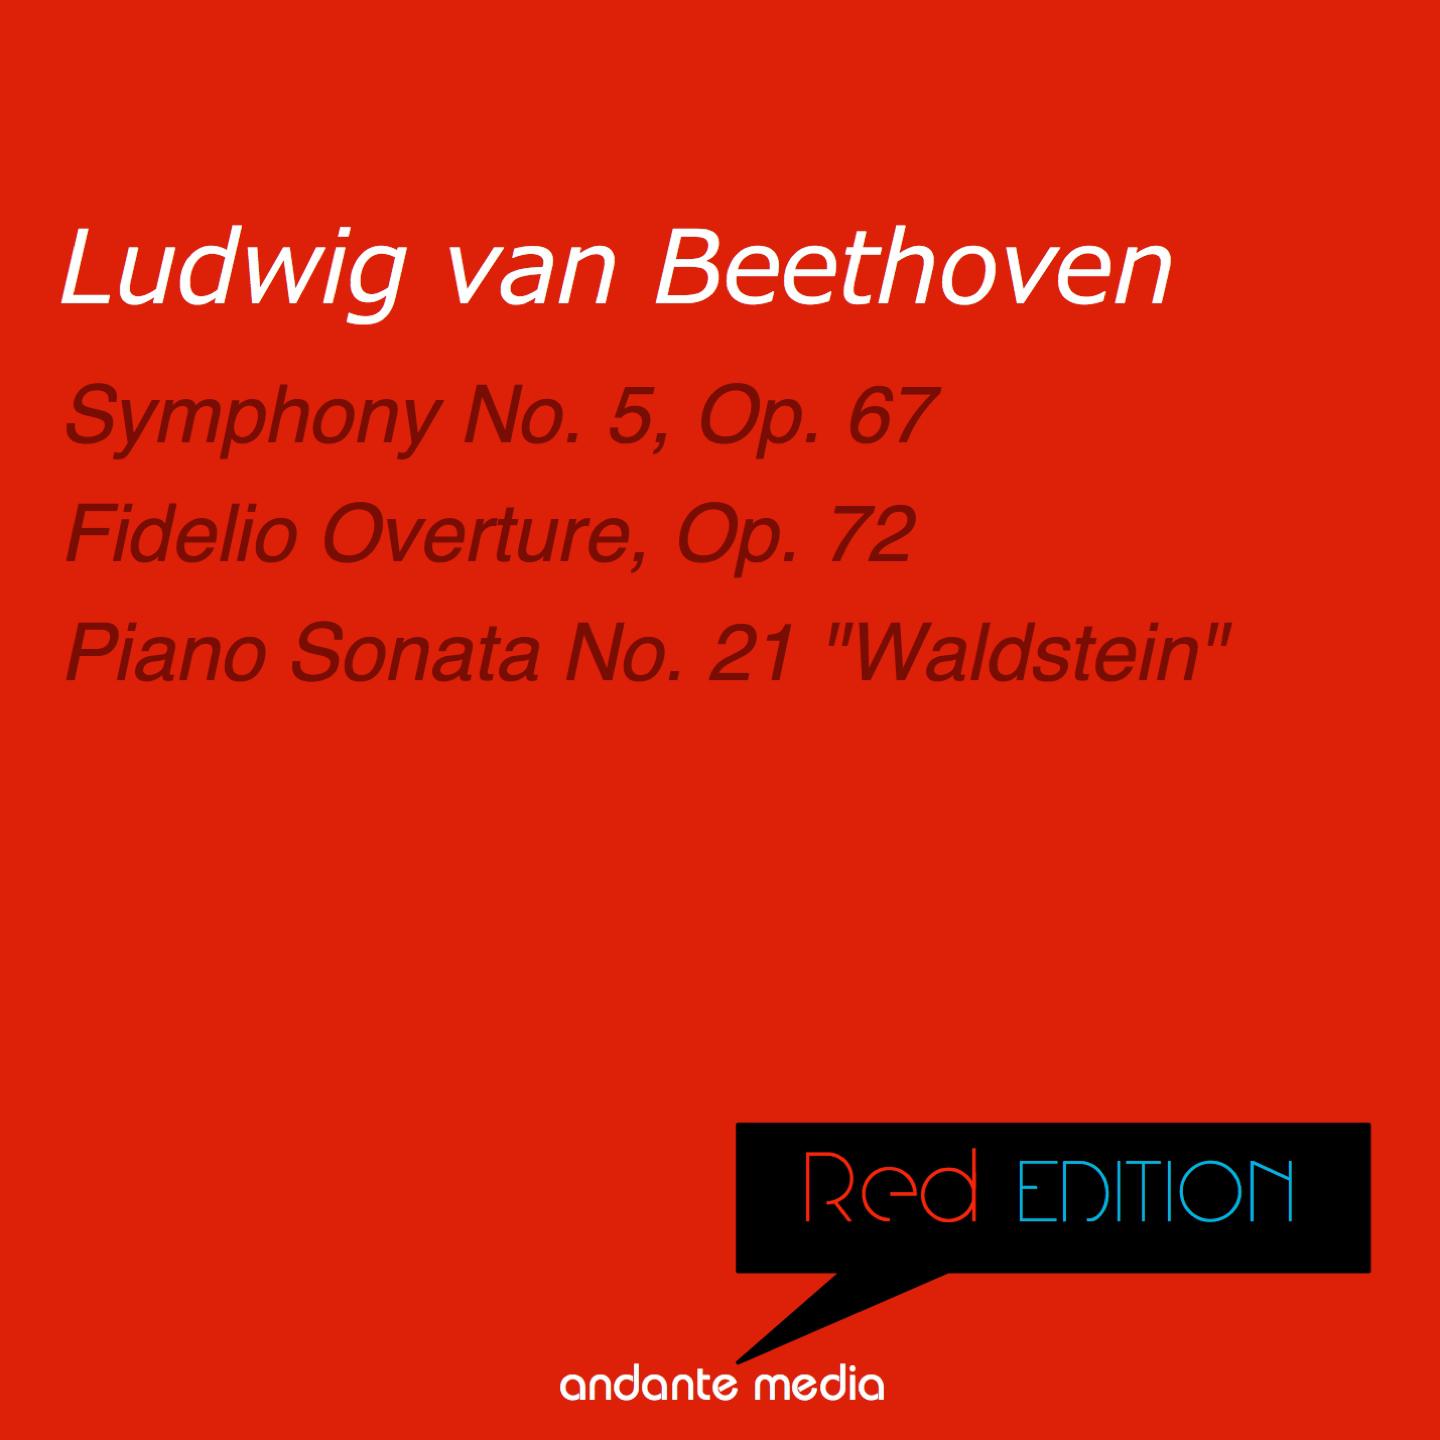 Piano Sonata No. 21 in C Major, Op. 53 "Waldstein": III. Rondo. Allegretto moderato - Prestissimo